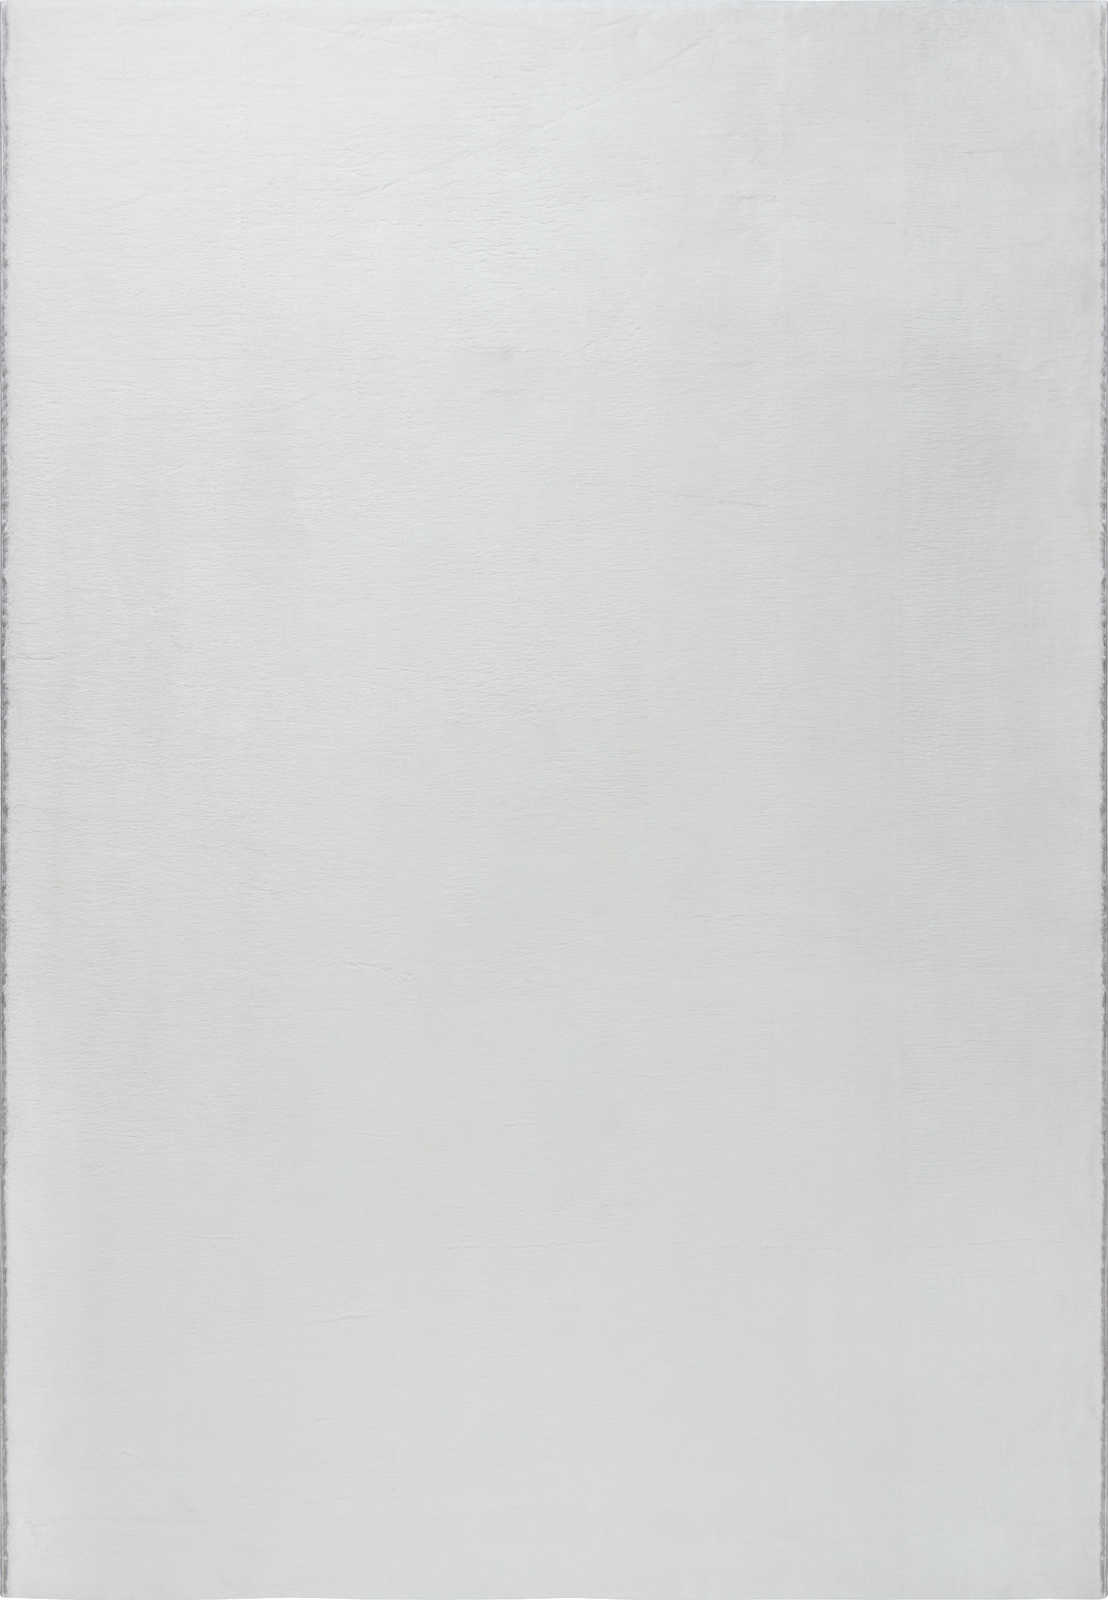             Flauschiger Hochflor Teppich in angenehmen Creme – 110 x 60 cm
        